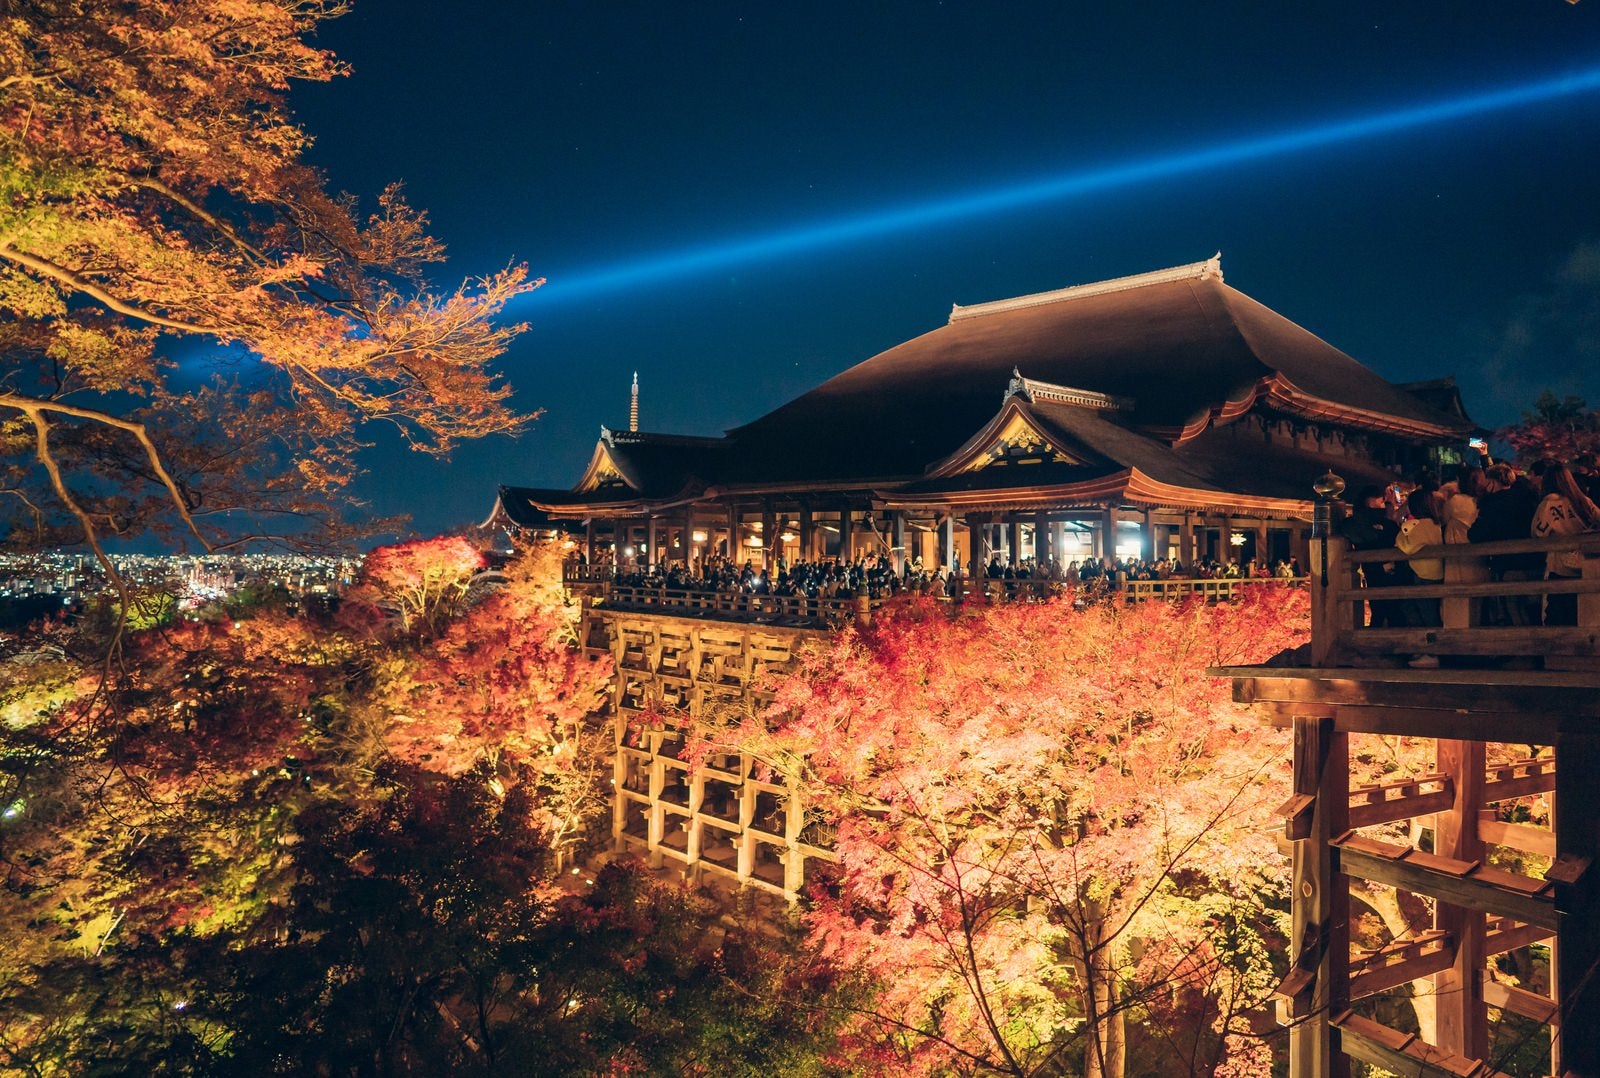 「人であふれかえる紅葉期の清水寺のライトアップ」の写真